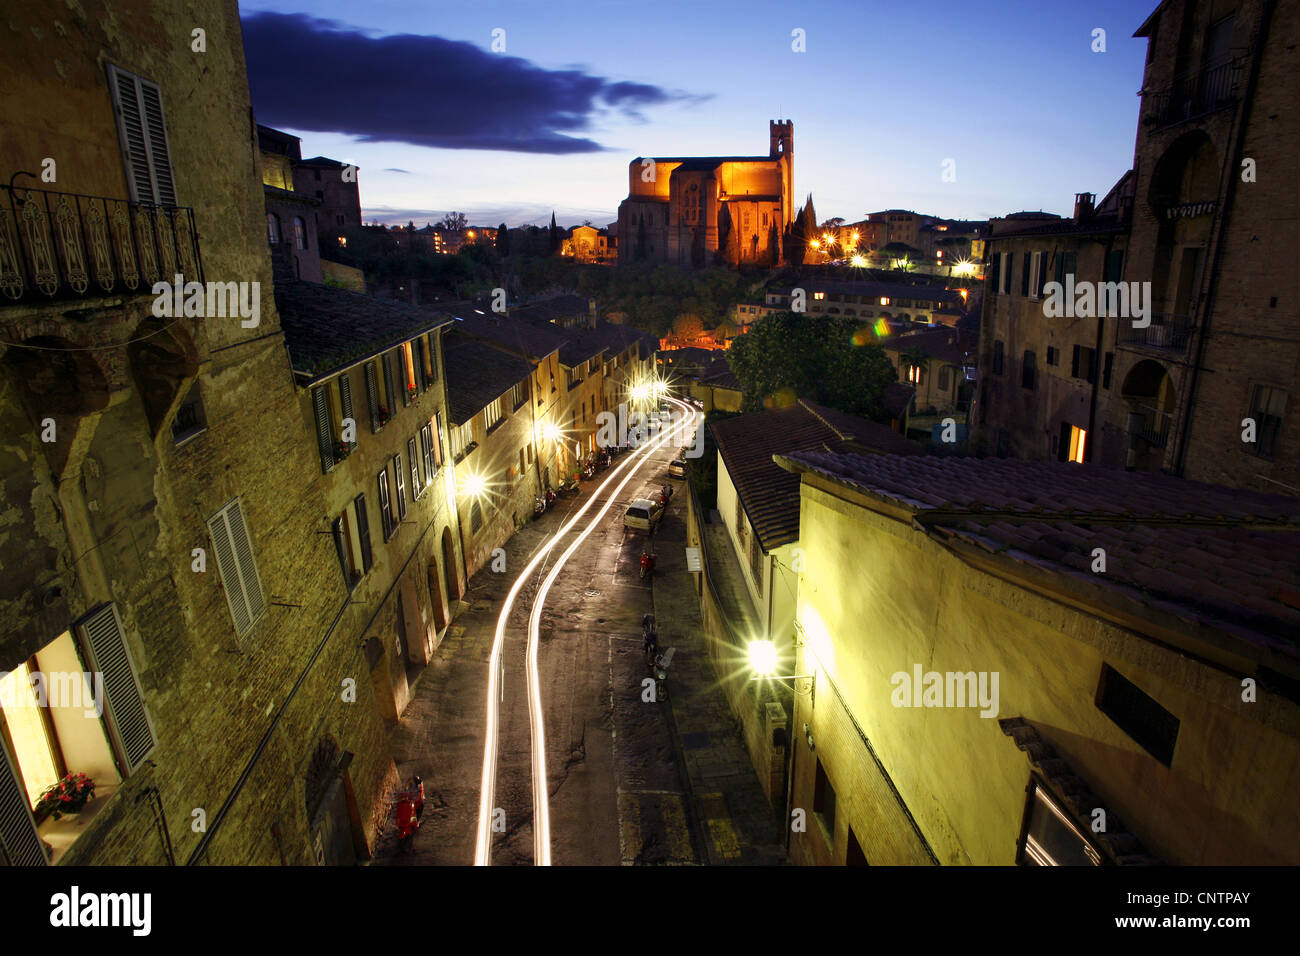 Basilica of San Domenico by night, Siena, Tuscany, Italy Stock Photo